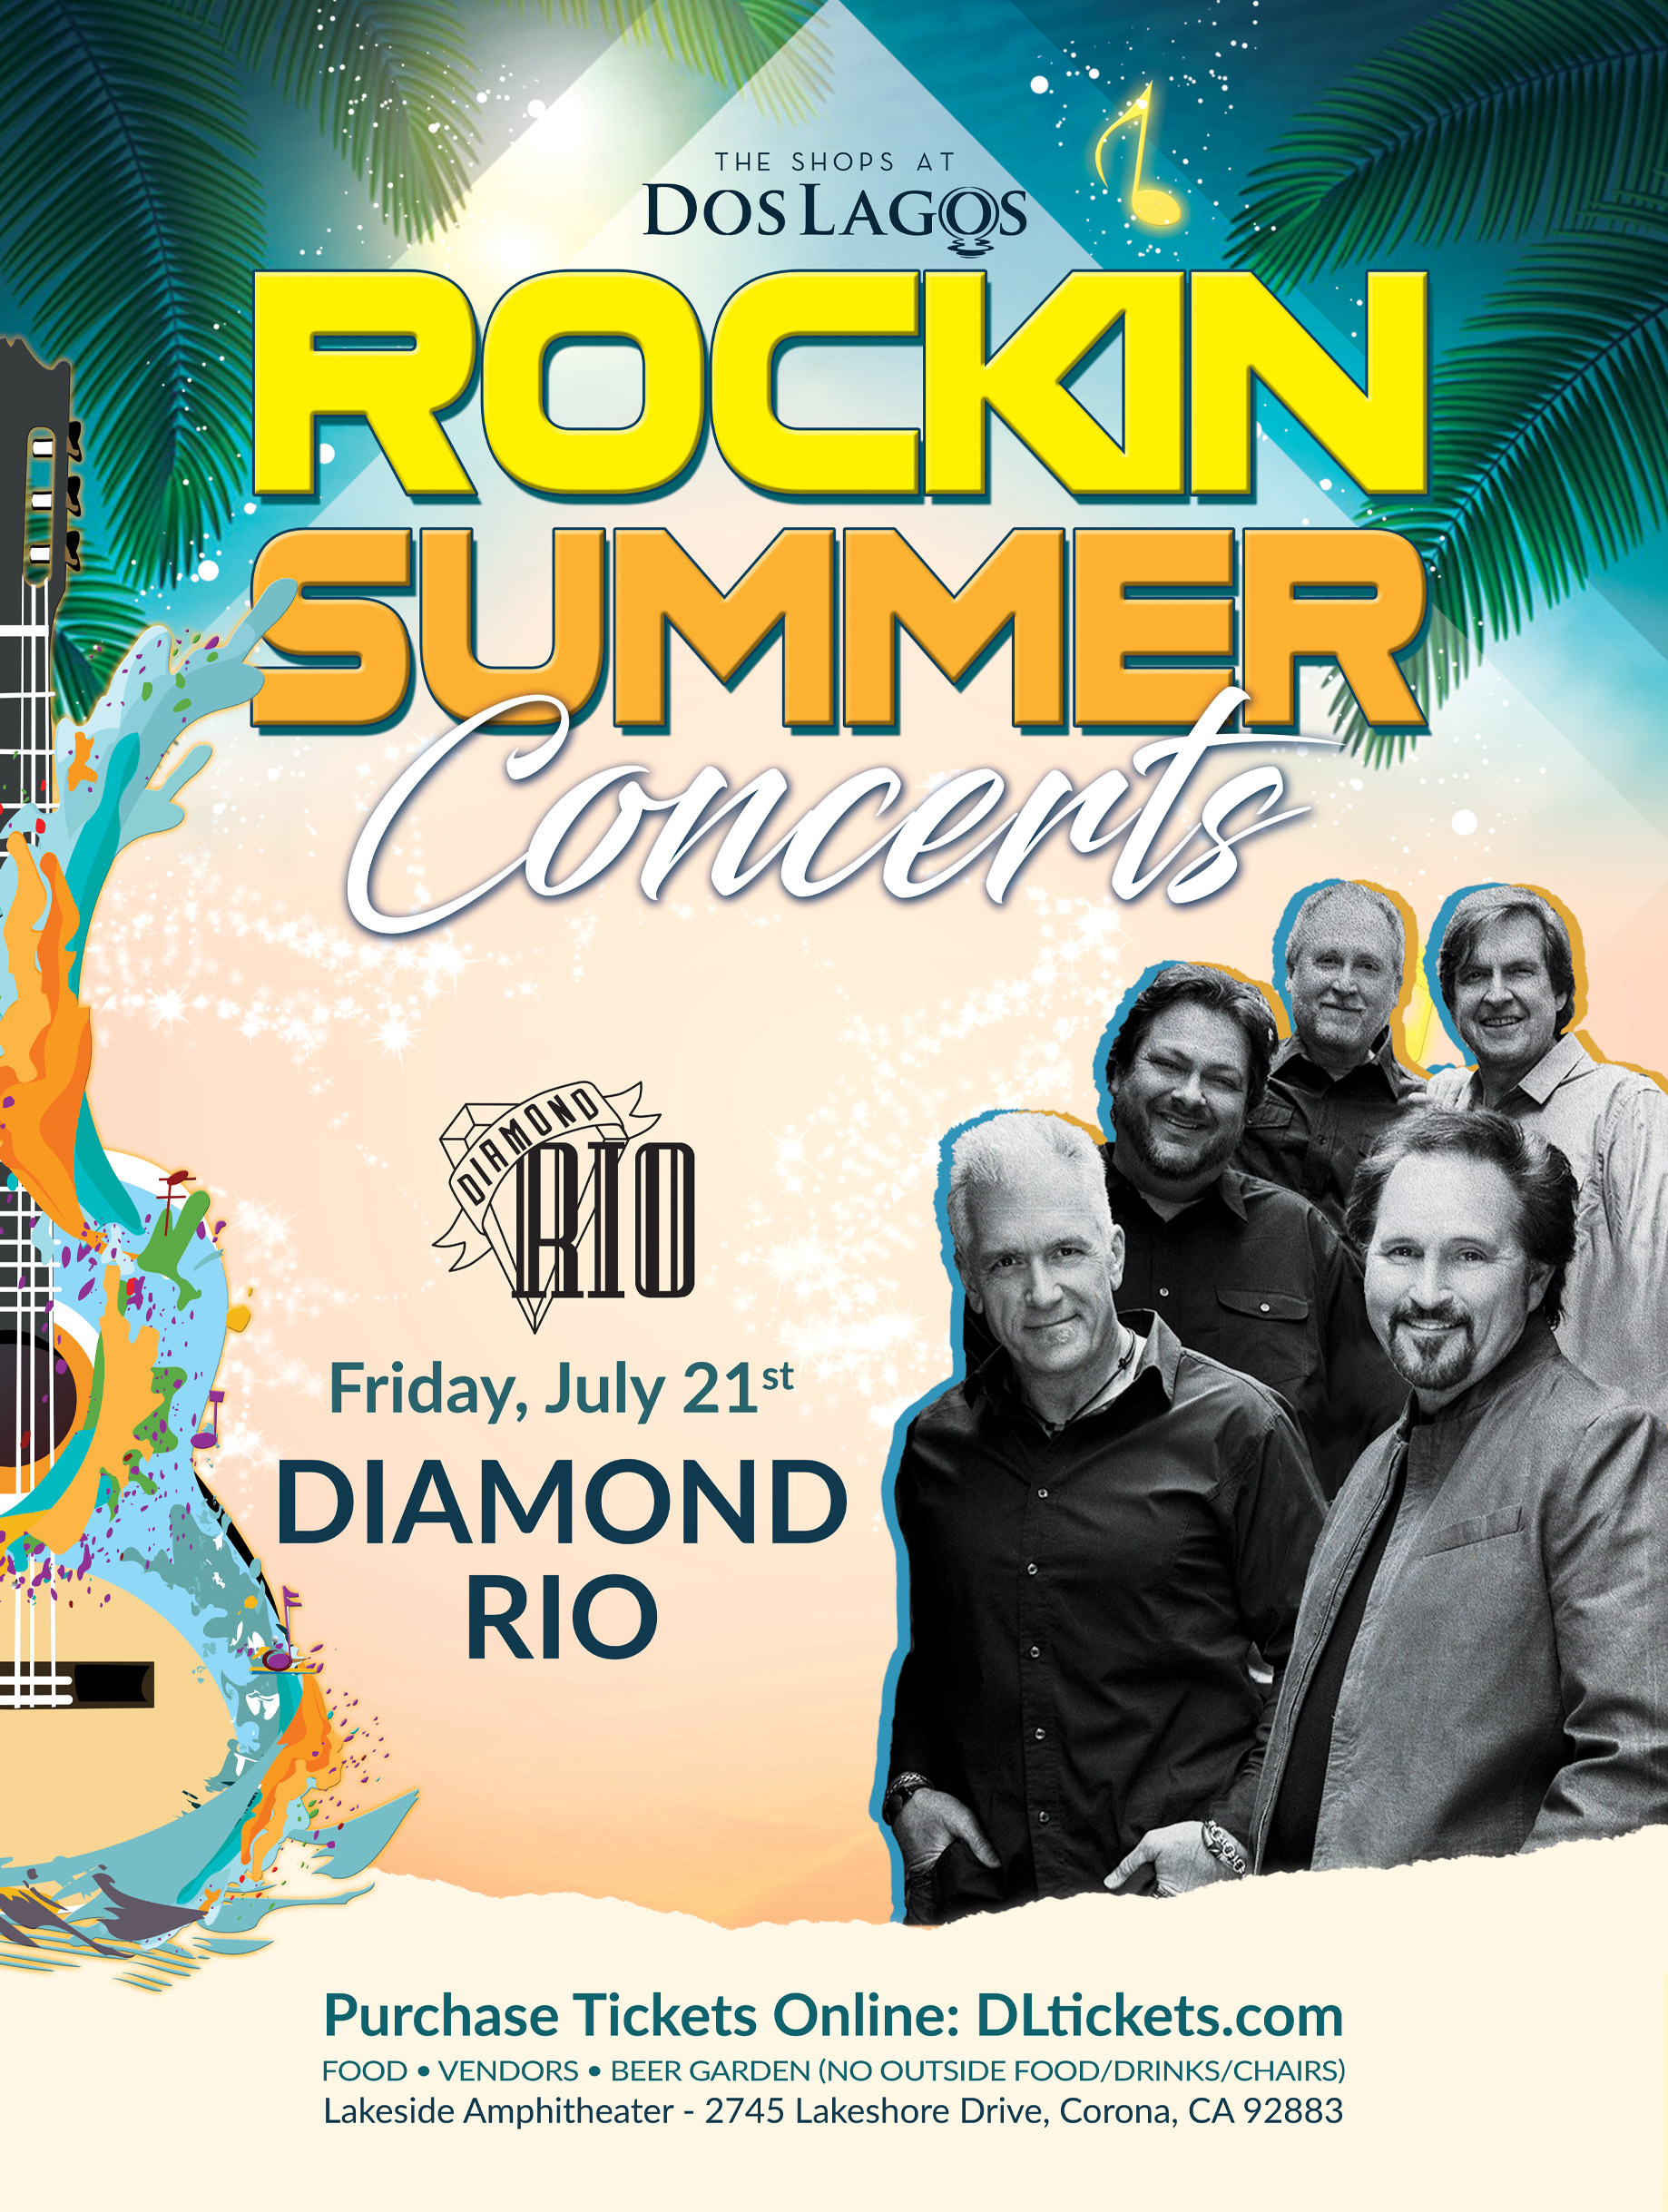 Diamond Rio “Rockin Summer Concerts” The Shops at Dos Lagos